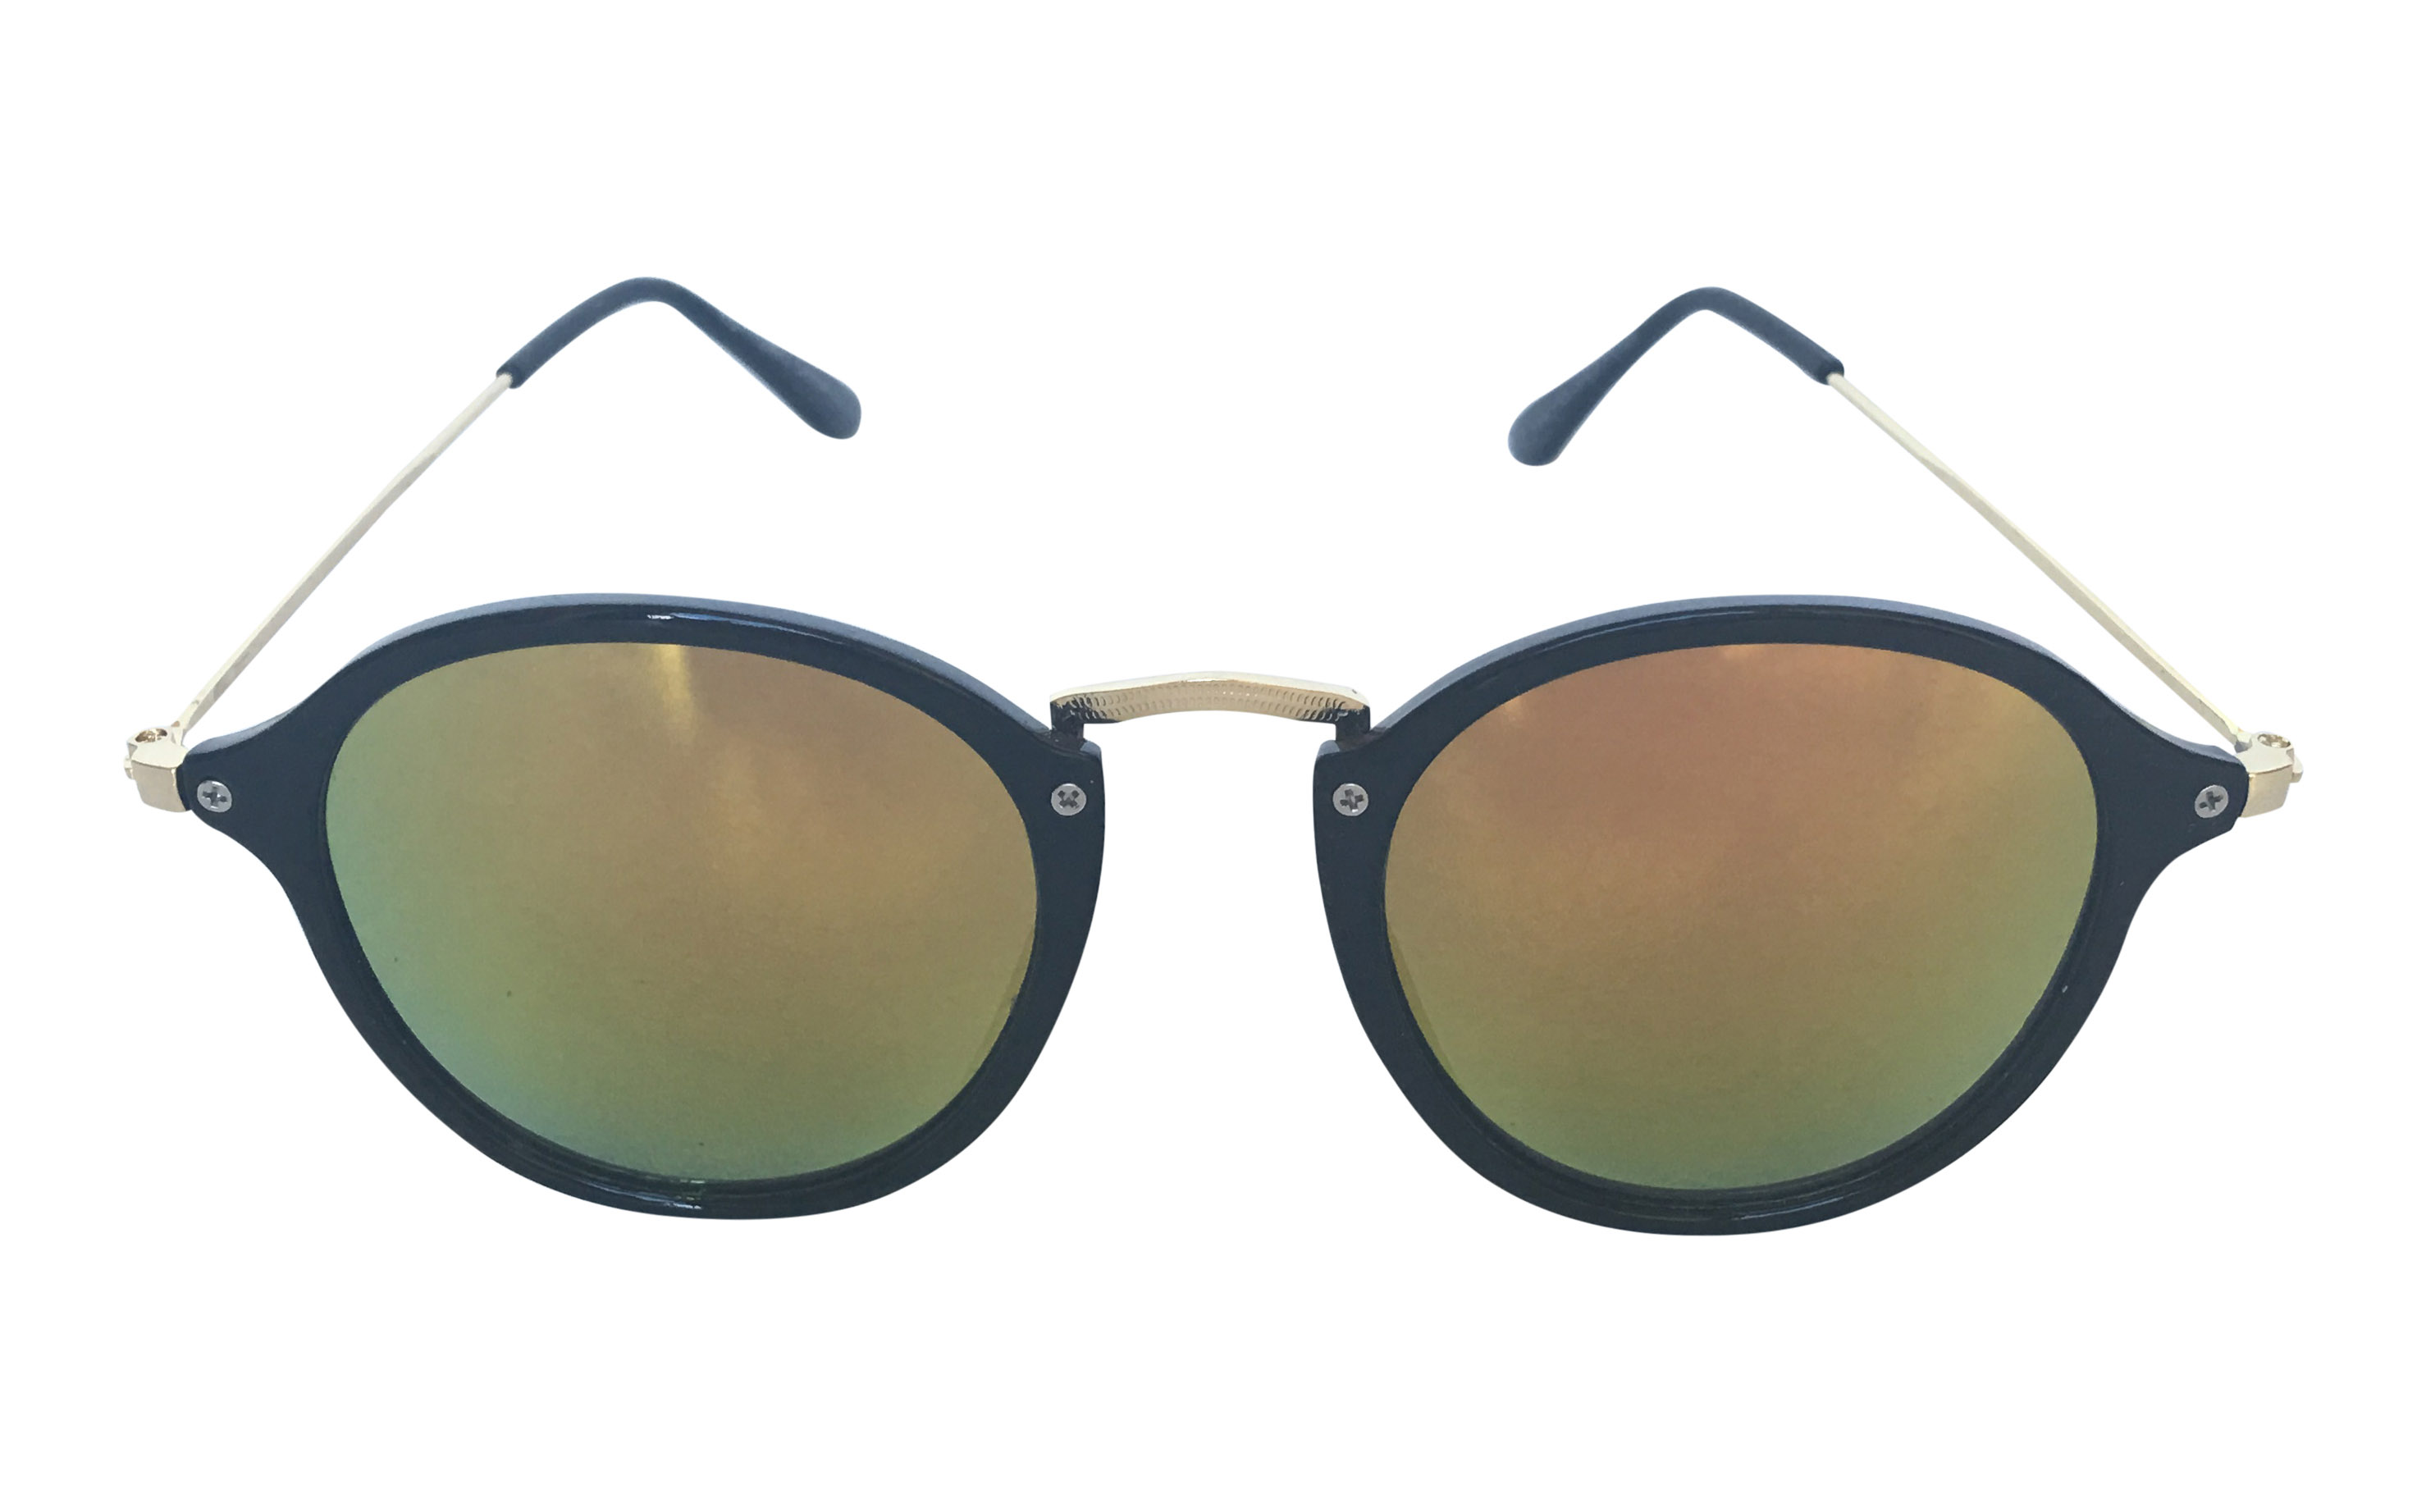 Lækker moderigtig solbrille i rundt design - Design nr. s3301